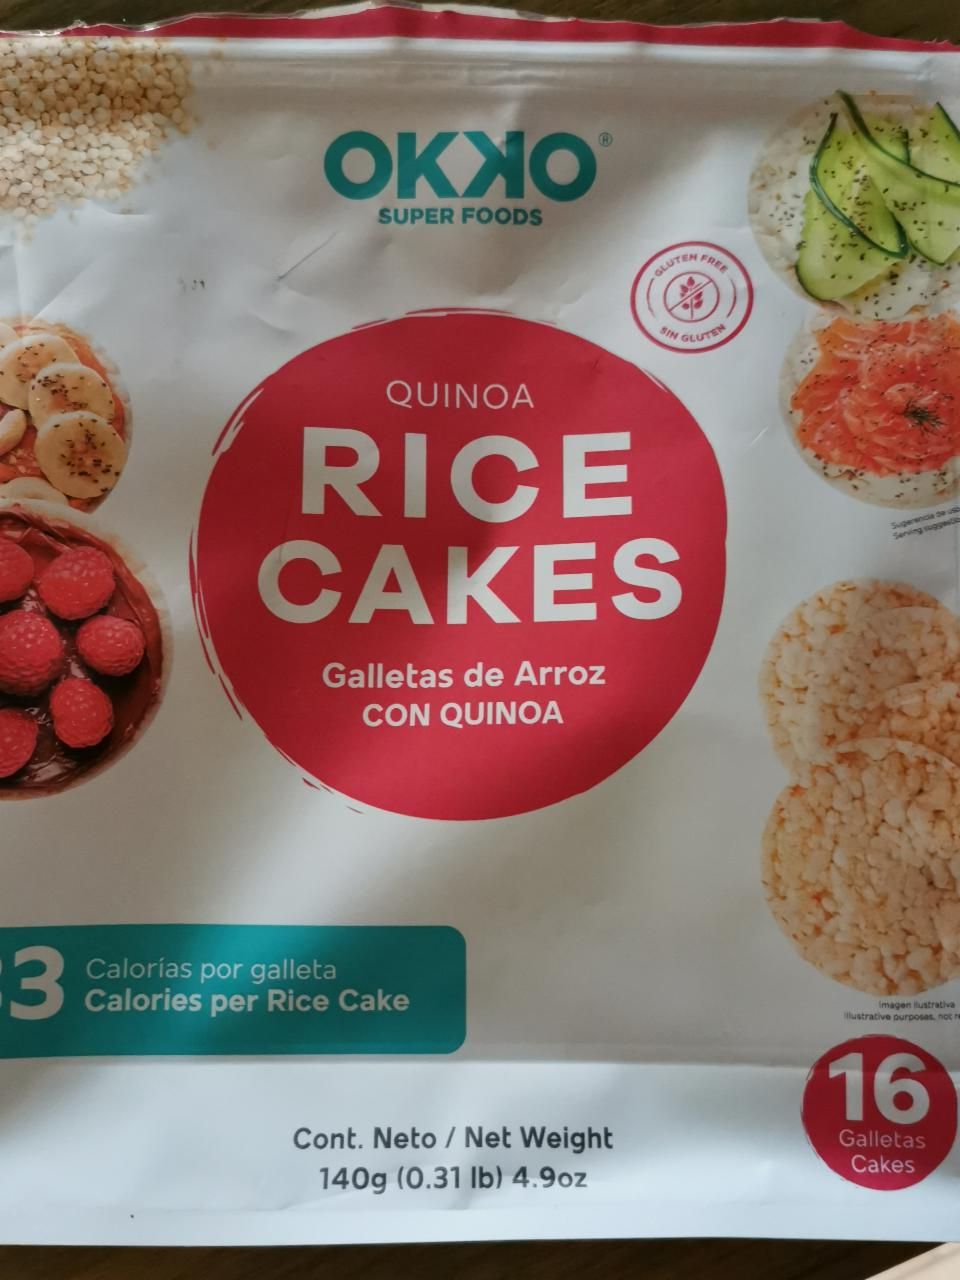 Fotografie - Rice cakes Galletas de Arroz con quinoa OKKO